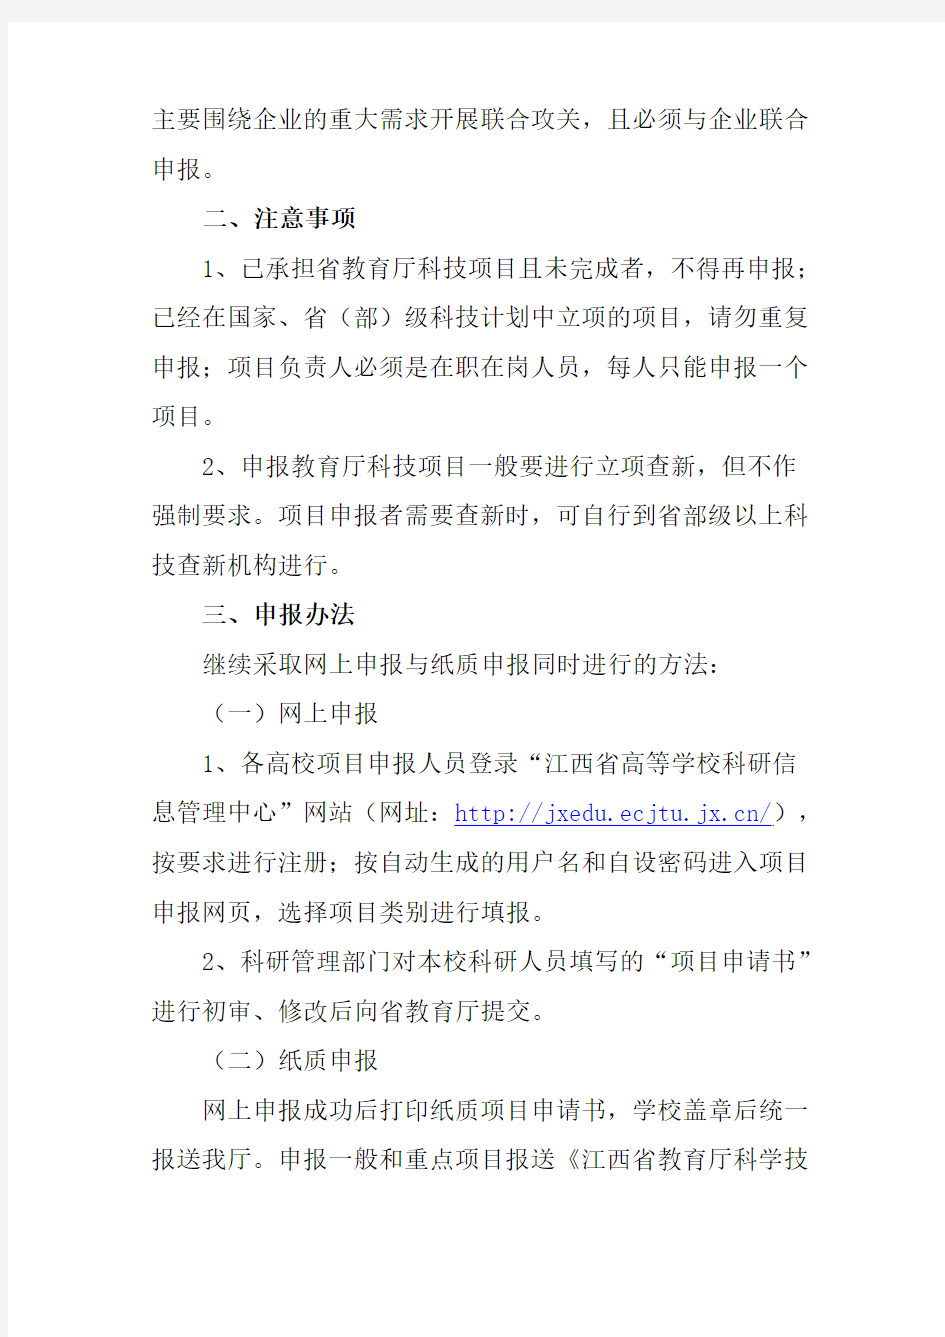 关于转发《关于组织申报江西省教育厅2012年度科技计划项目的通知》的通知